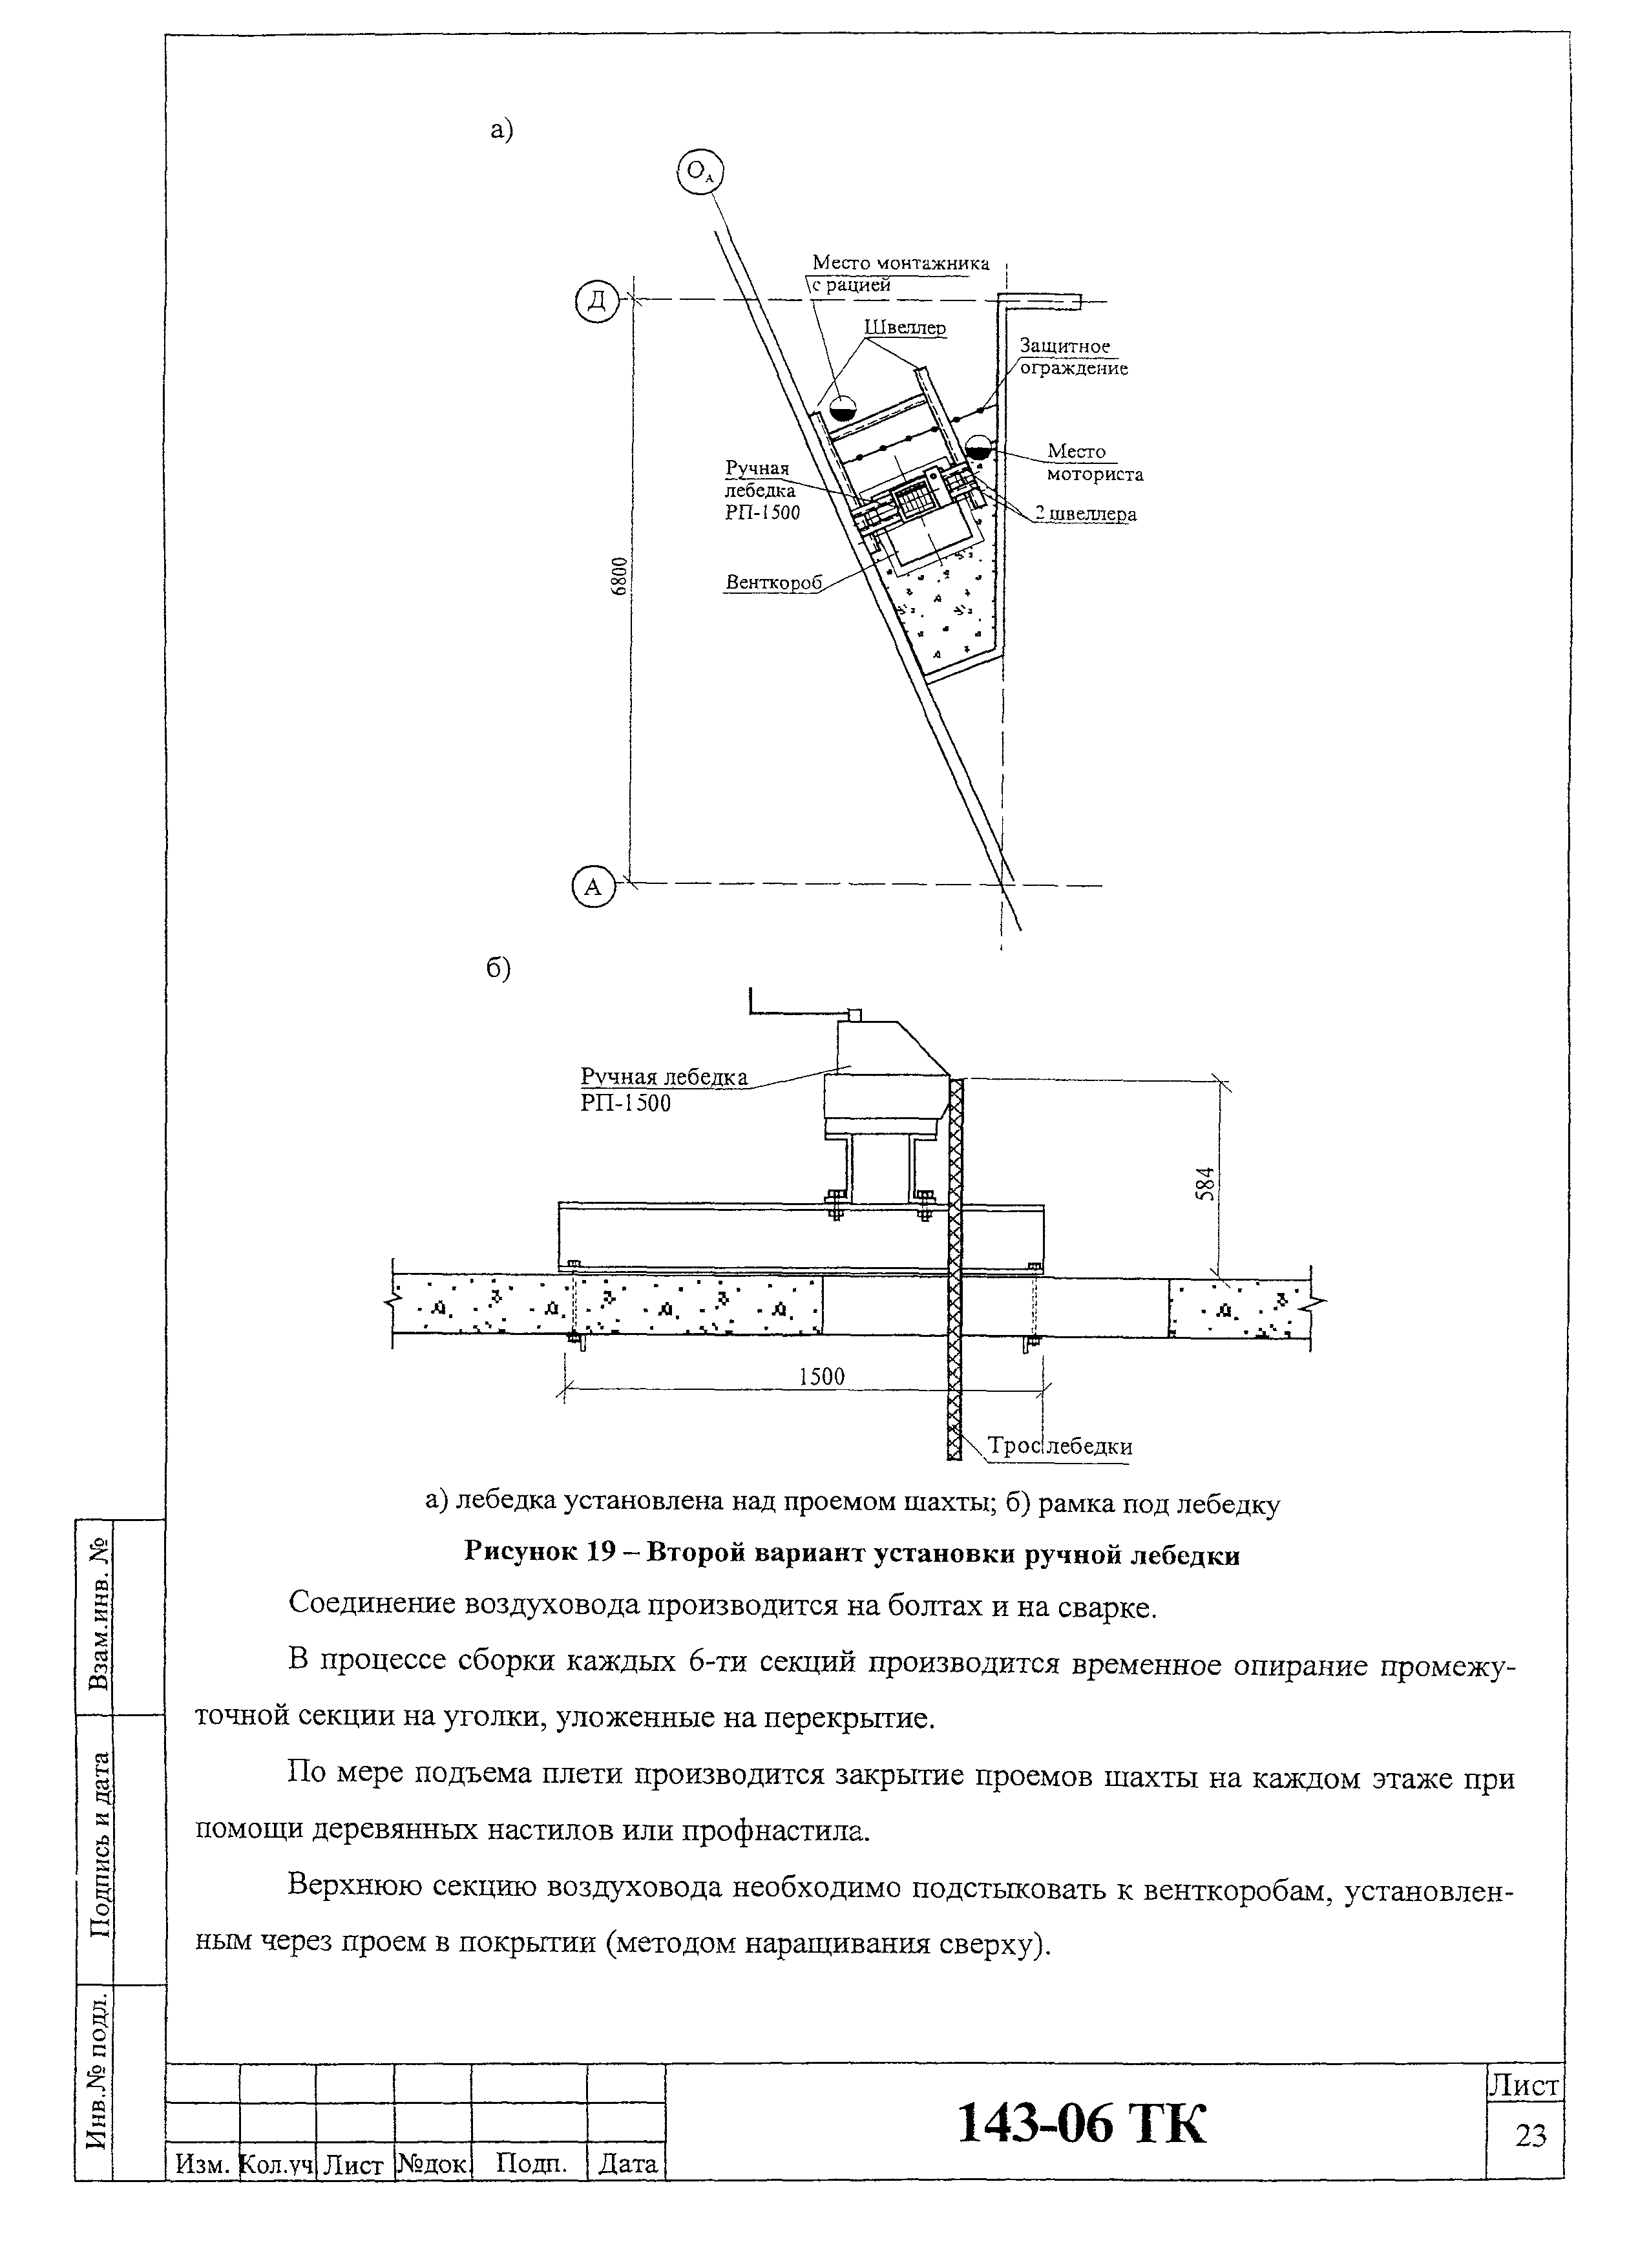 Технологическая карта 143-06 ТК